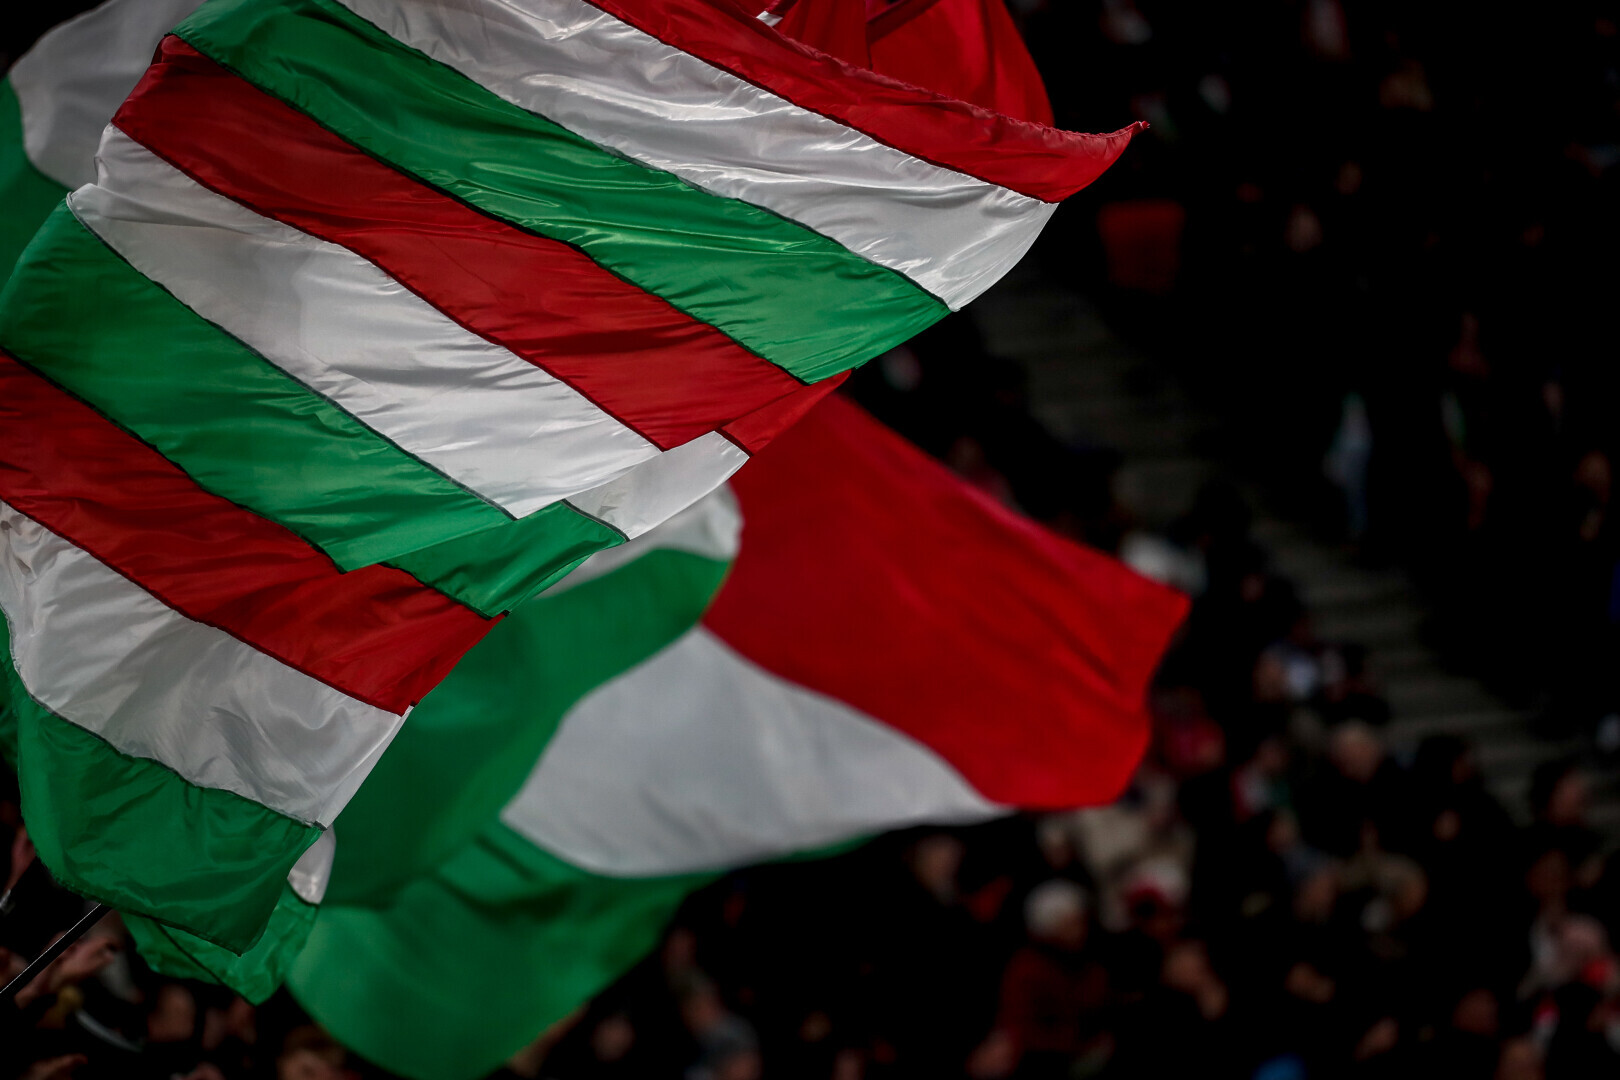 Magyarország-Csehország: megkezdődött a jegyértékesítés